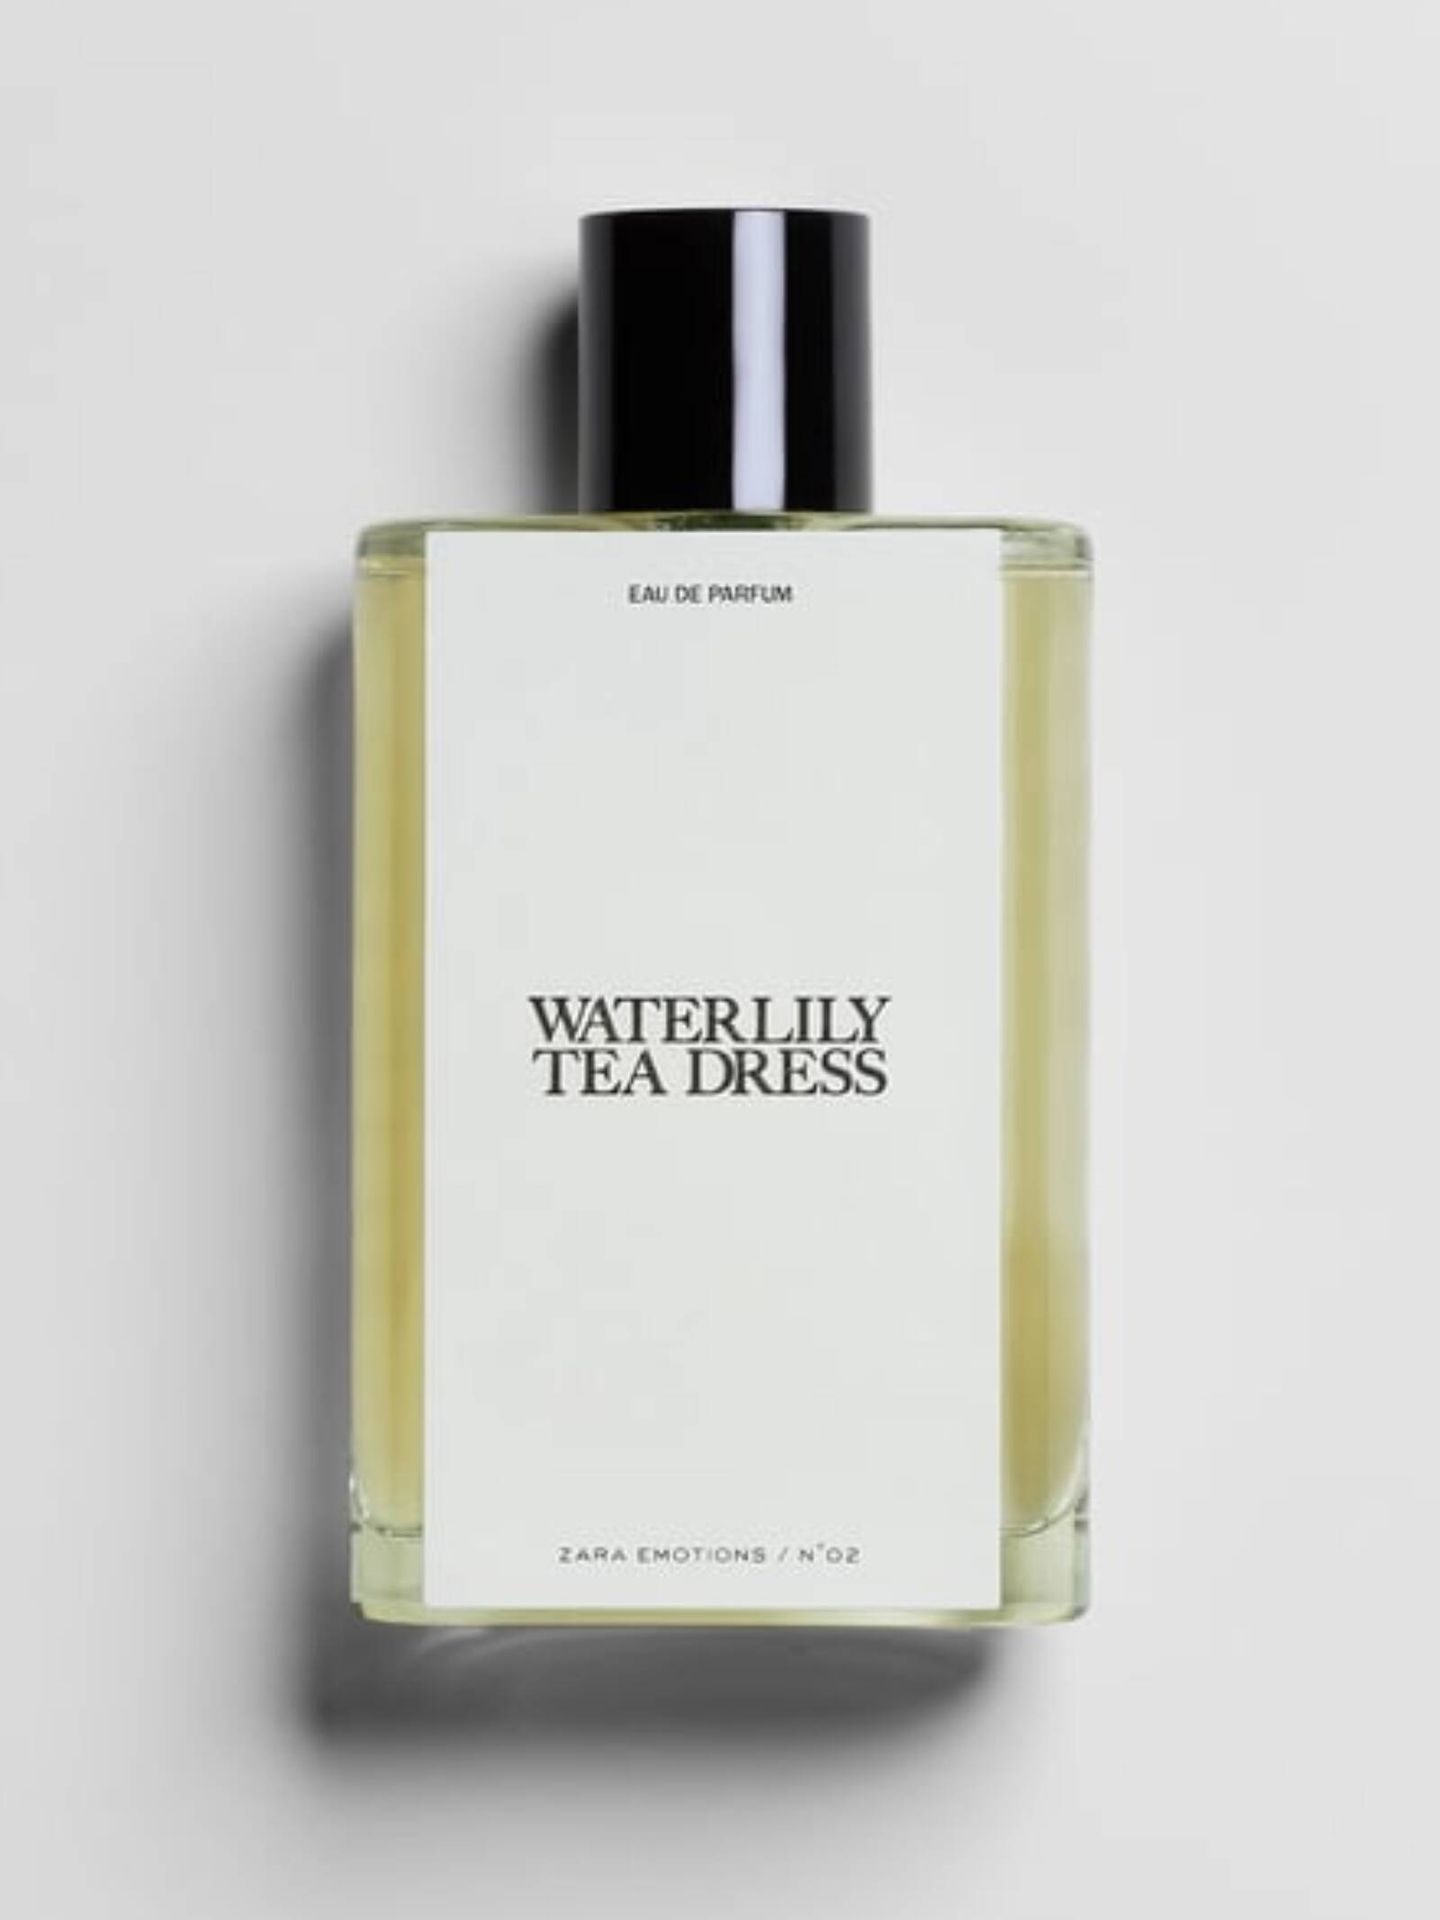 Perfumes de Zara con olor a limpio y florales. (Cortesía)